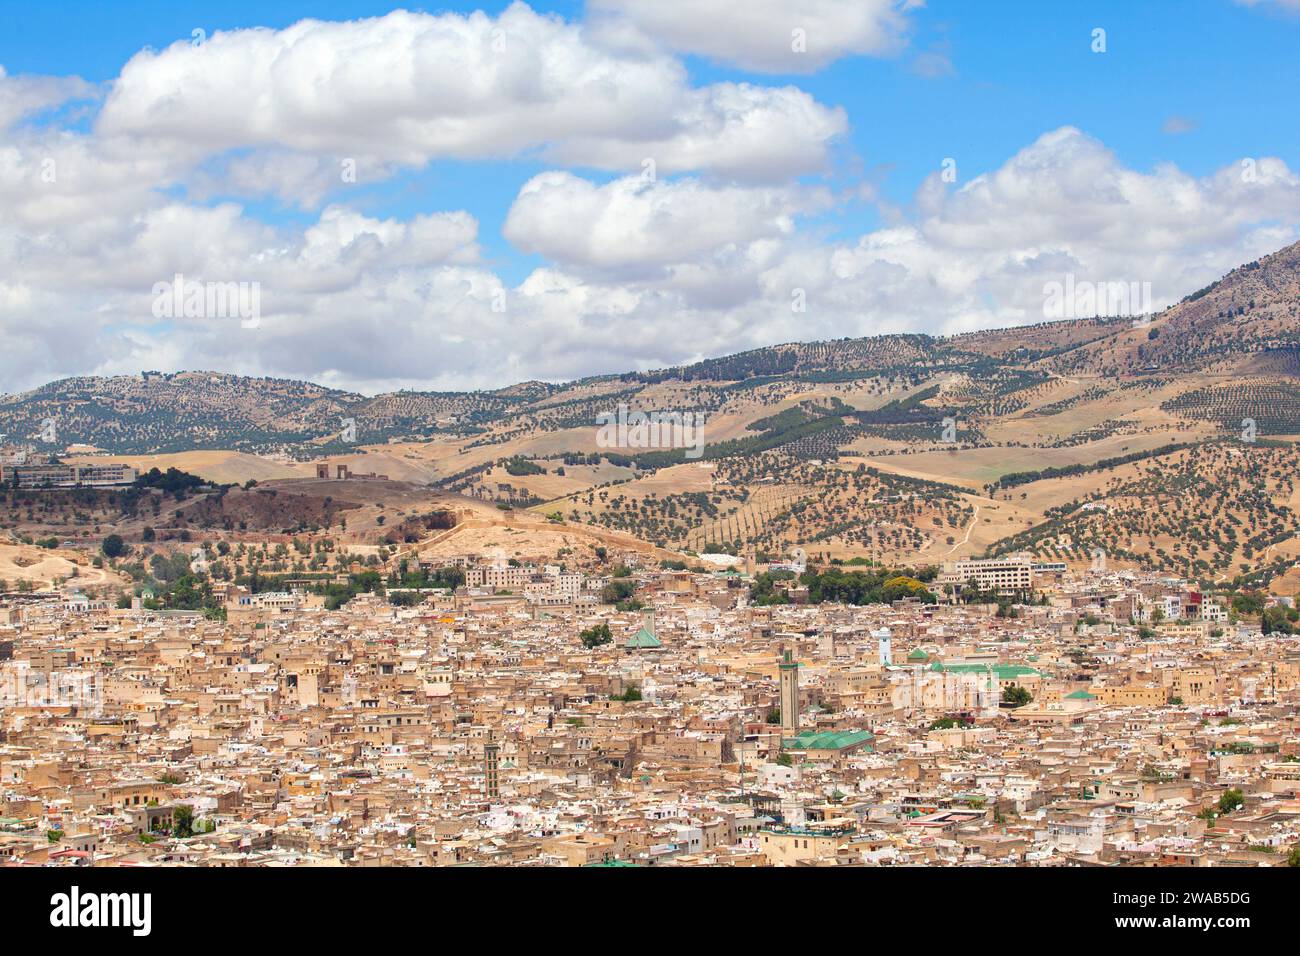 La città imperiale di Fez e le colline circostanti sono viste dall'alto, in Marocco. Foto Stock